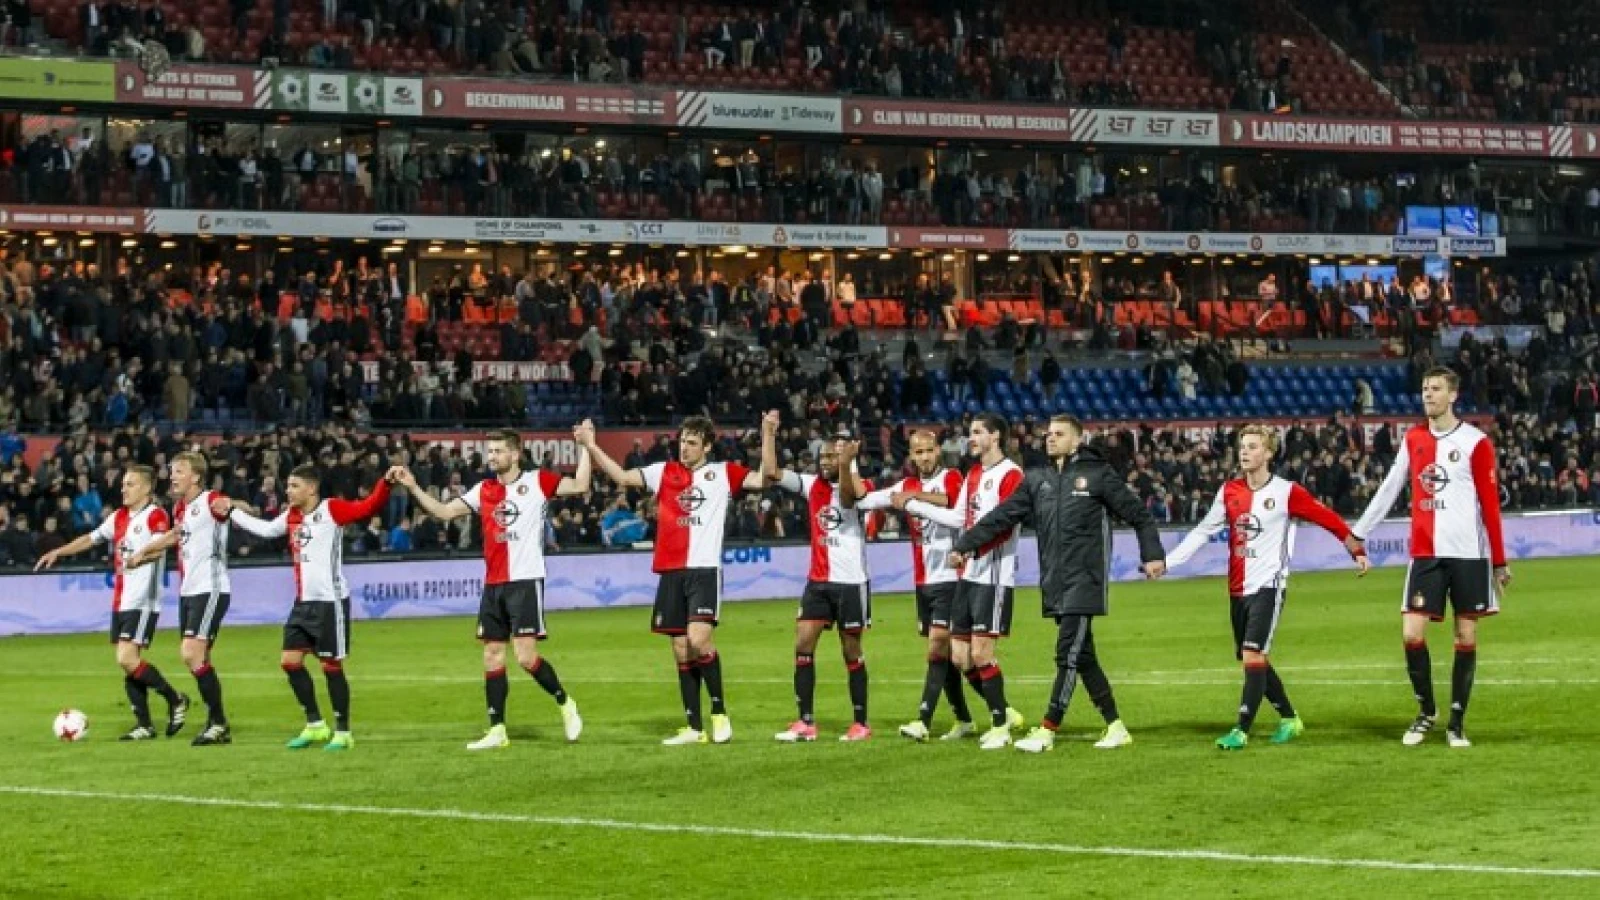 Bizarre situatie: Feyenoord kan bij kampioenschap Champions League mislopen